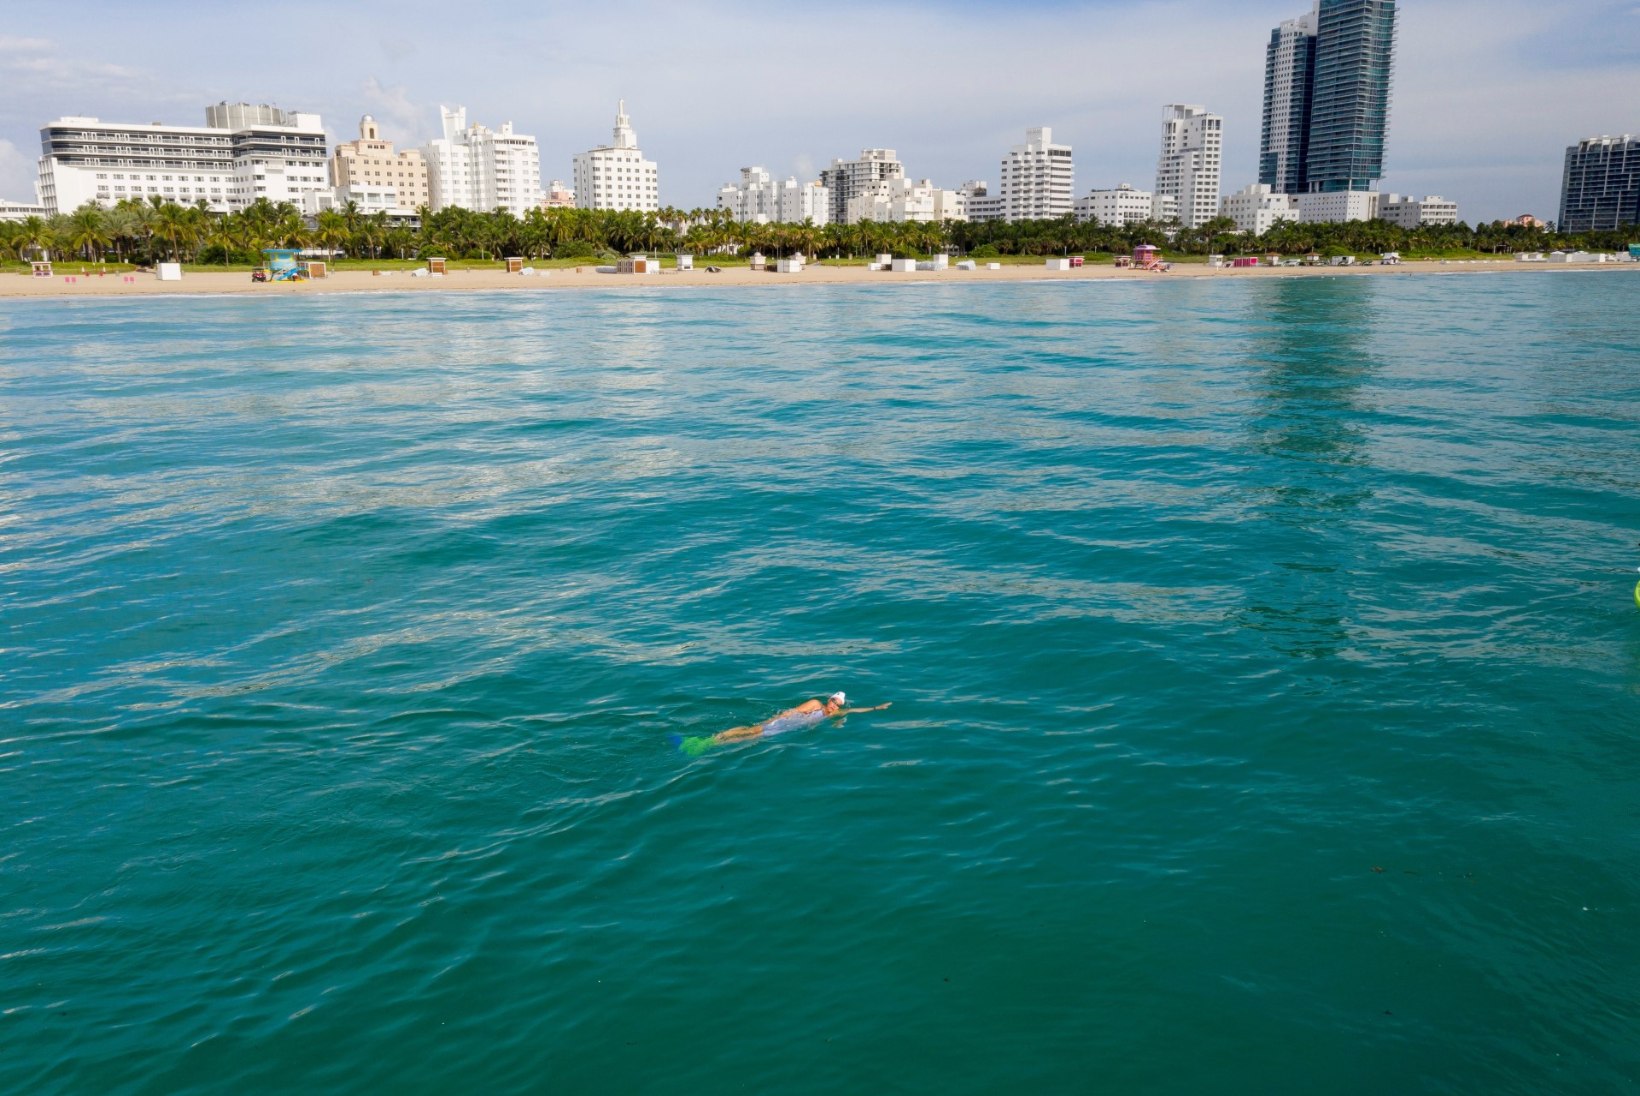 FOTOD JA VIDEOD | Vägev naine! Eestlanna püstitas merineitsisabaga ujudes maailmarekordi